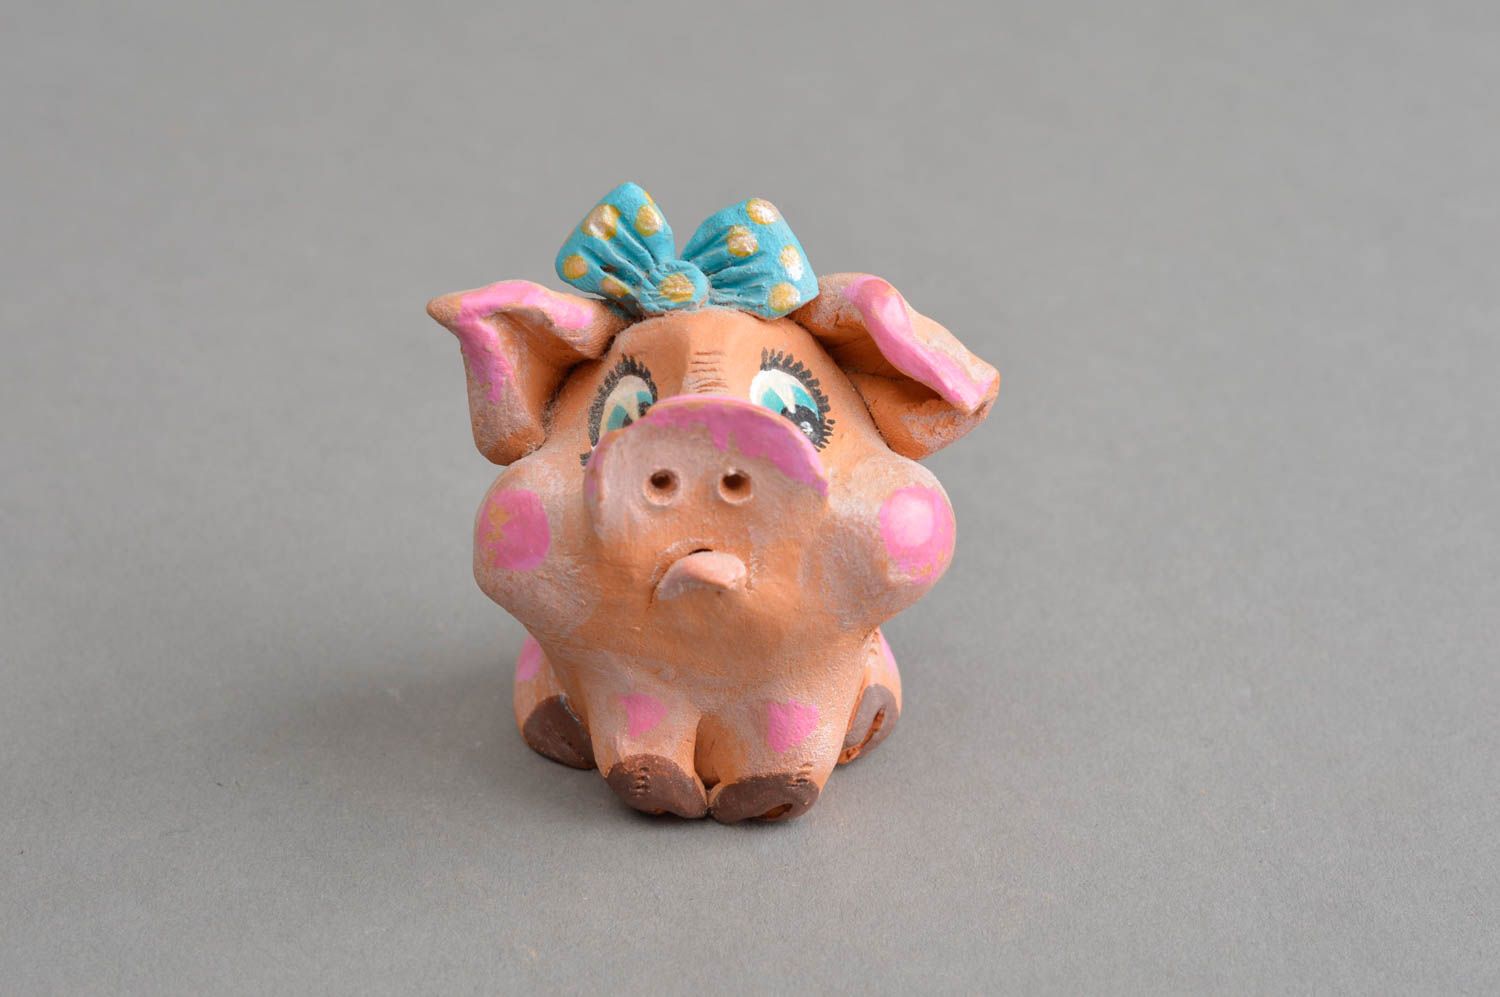 Керамический сувенир ручной работы обиженная свинка с голубым бантиком фото 2